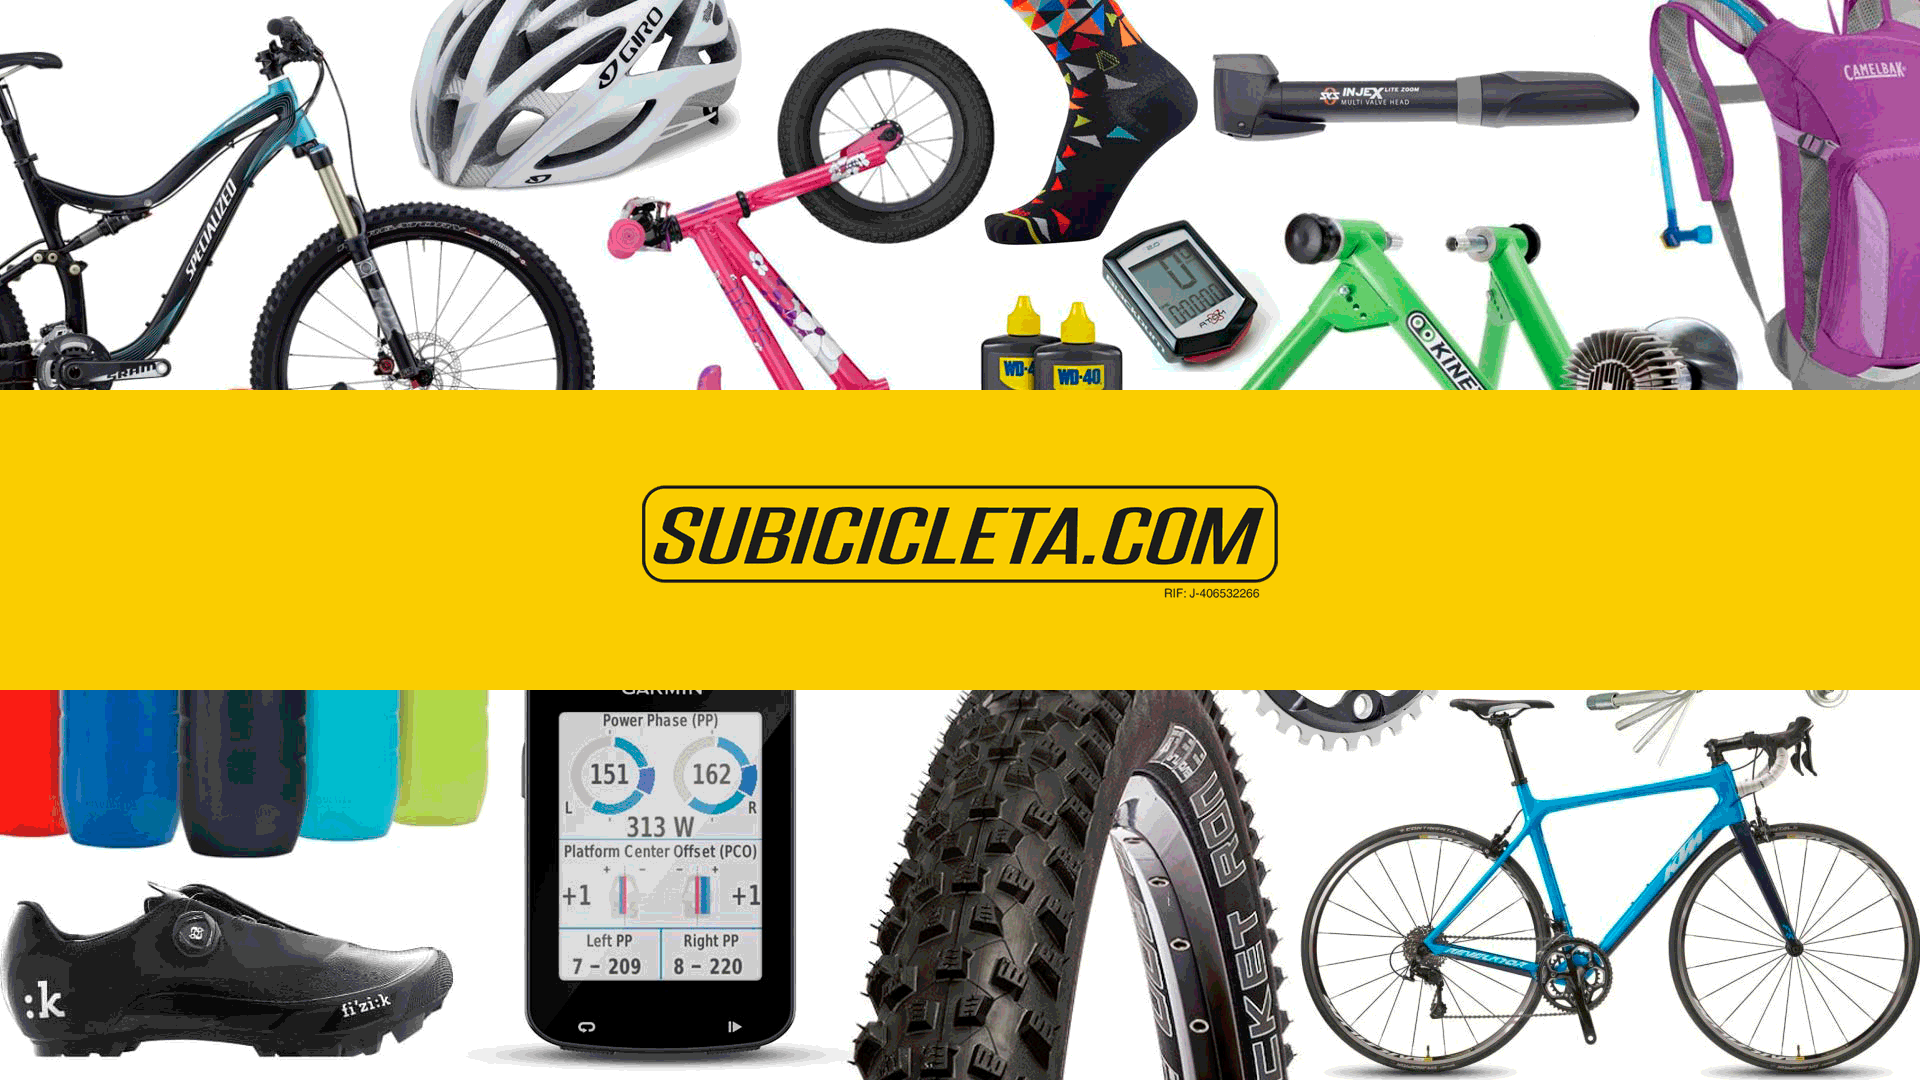 Productos: bicicletas, repuestos, accesorios, ropa y más - Subicicleta.com